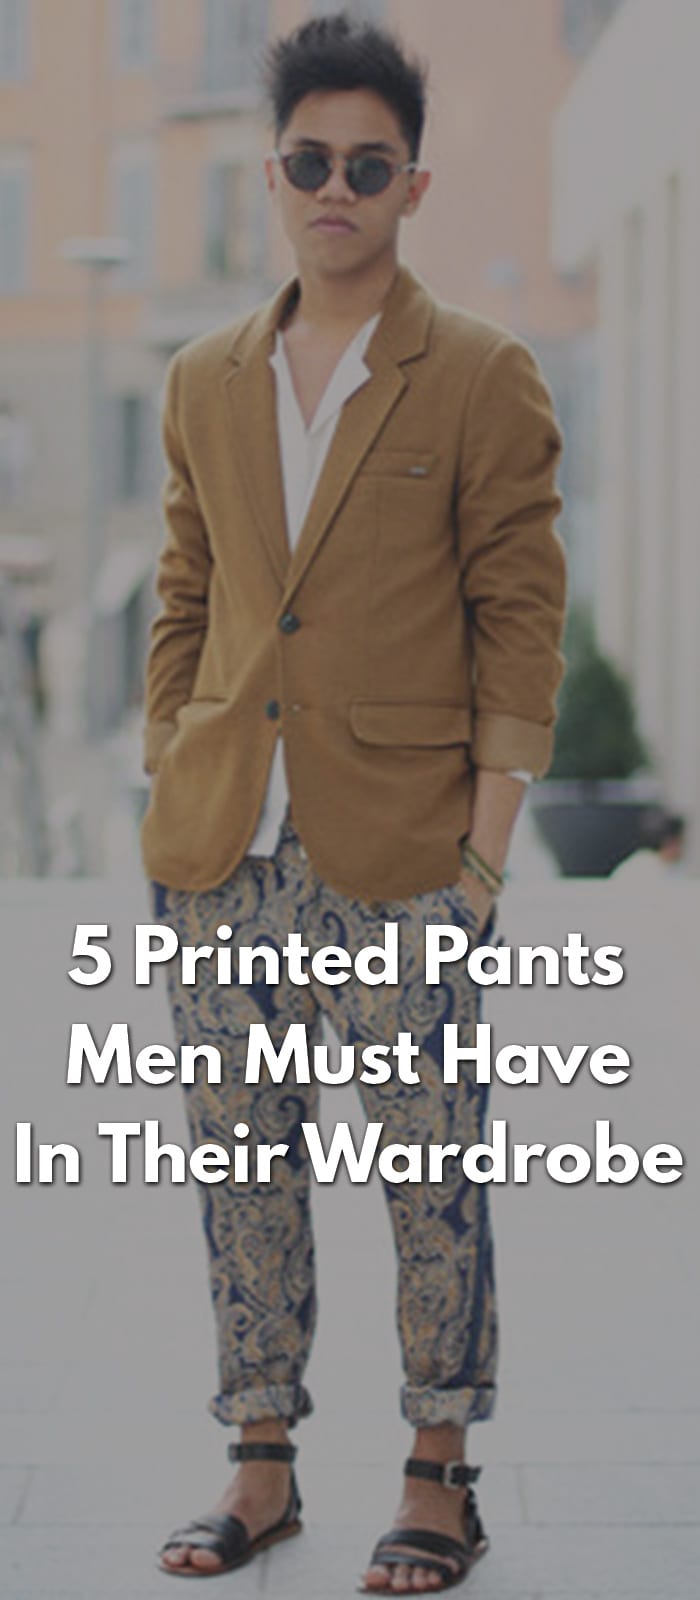 5 Printed Pants Men Must Have In Their Wardrobe